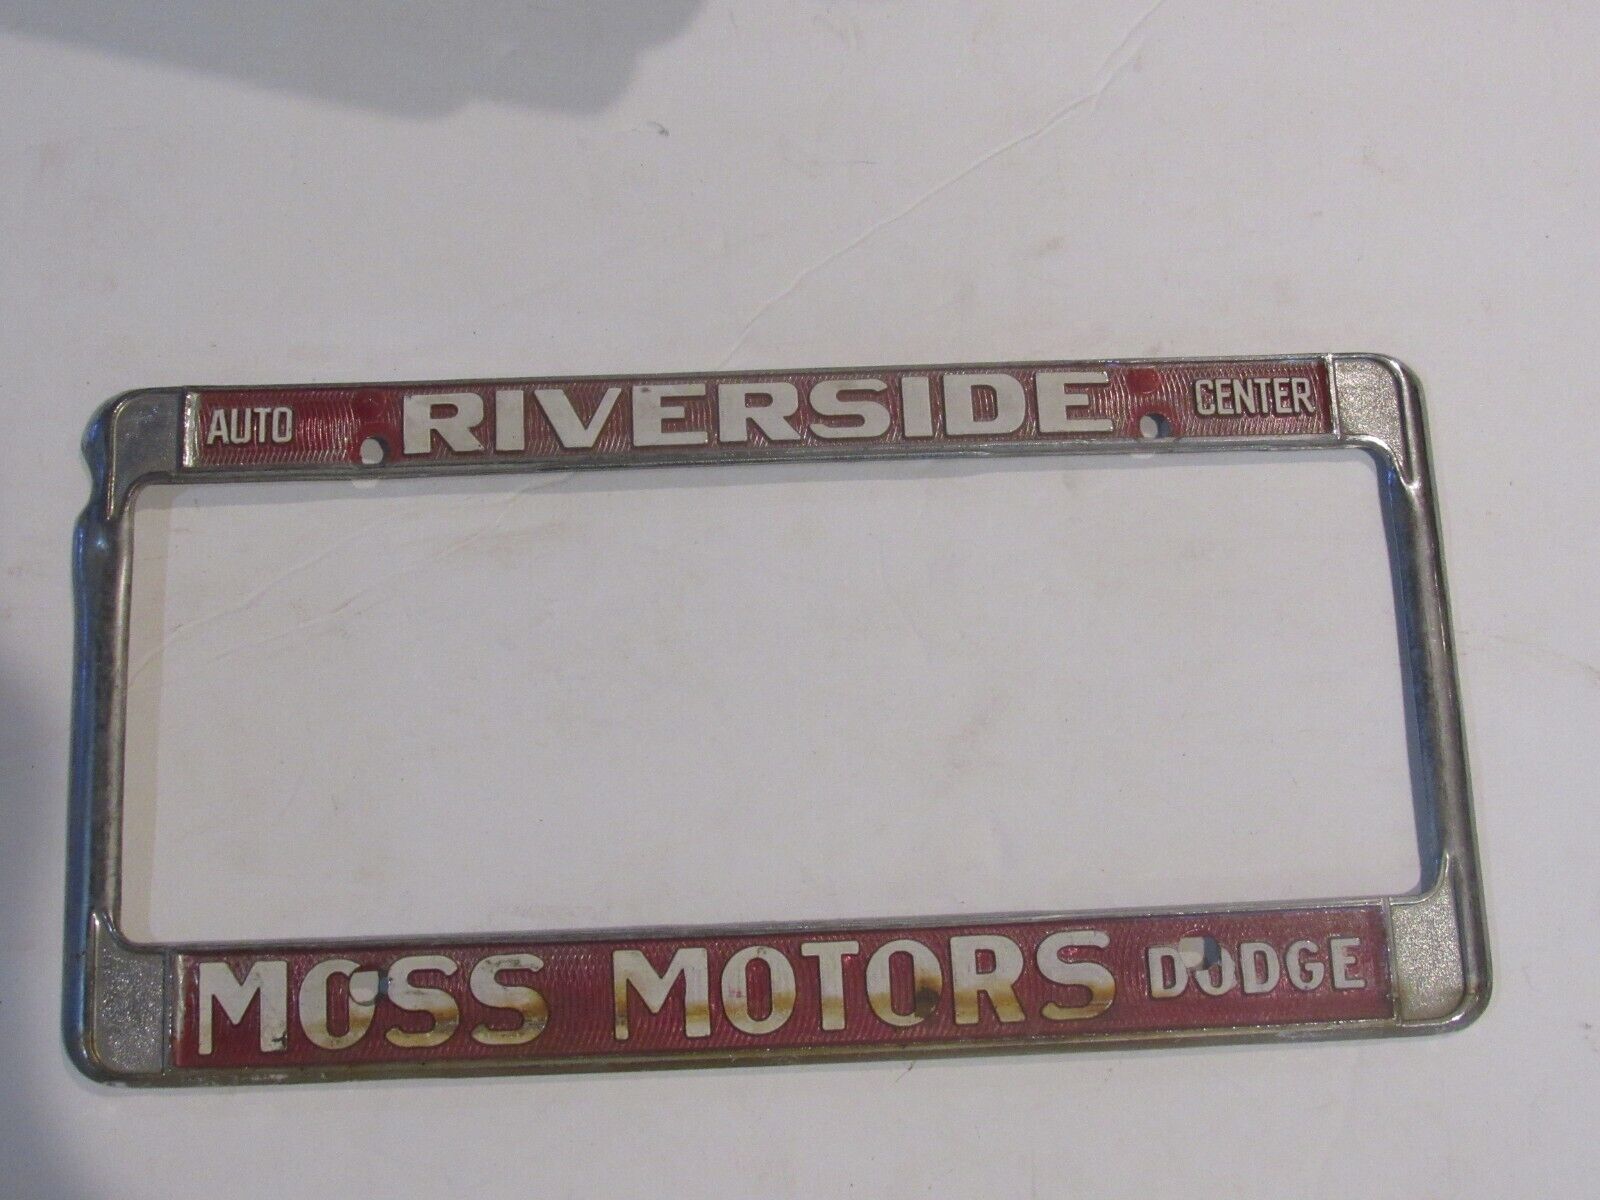 Riverside Auto Center Vintage  Moss Motors Dodge License Plate Frame Metal USA